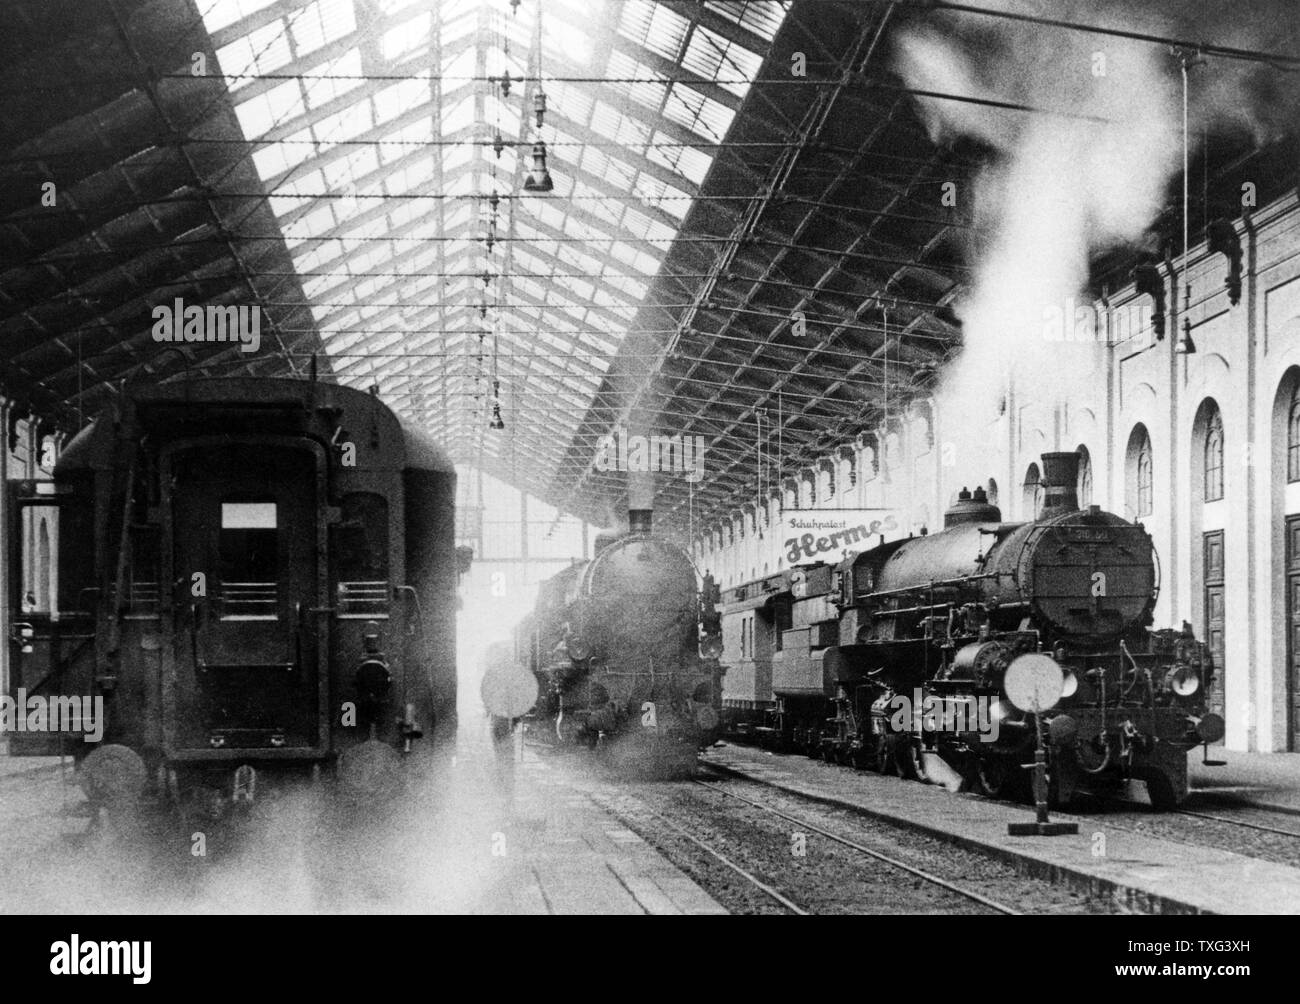 Des trains à vapeur qui arrivent à la gare de Westbahnhof Wien, Autriche. Vers 1905 Banque D'Images